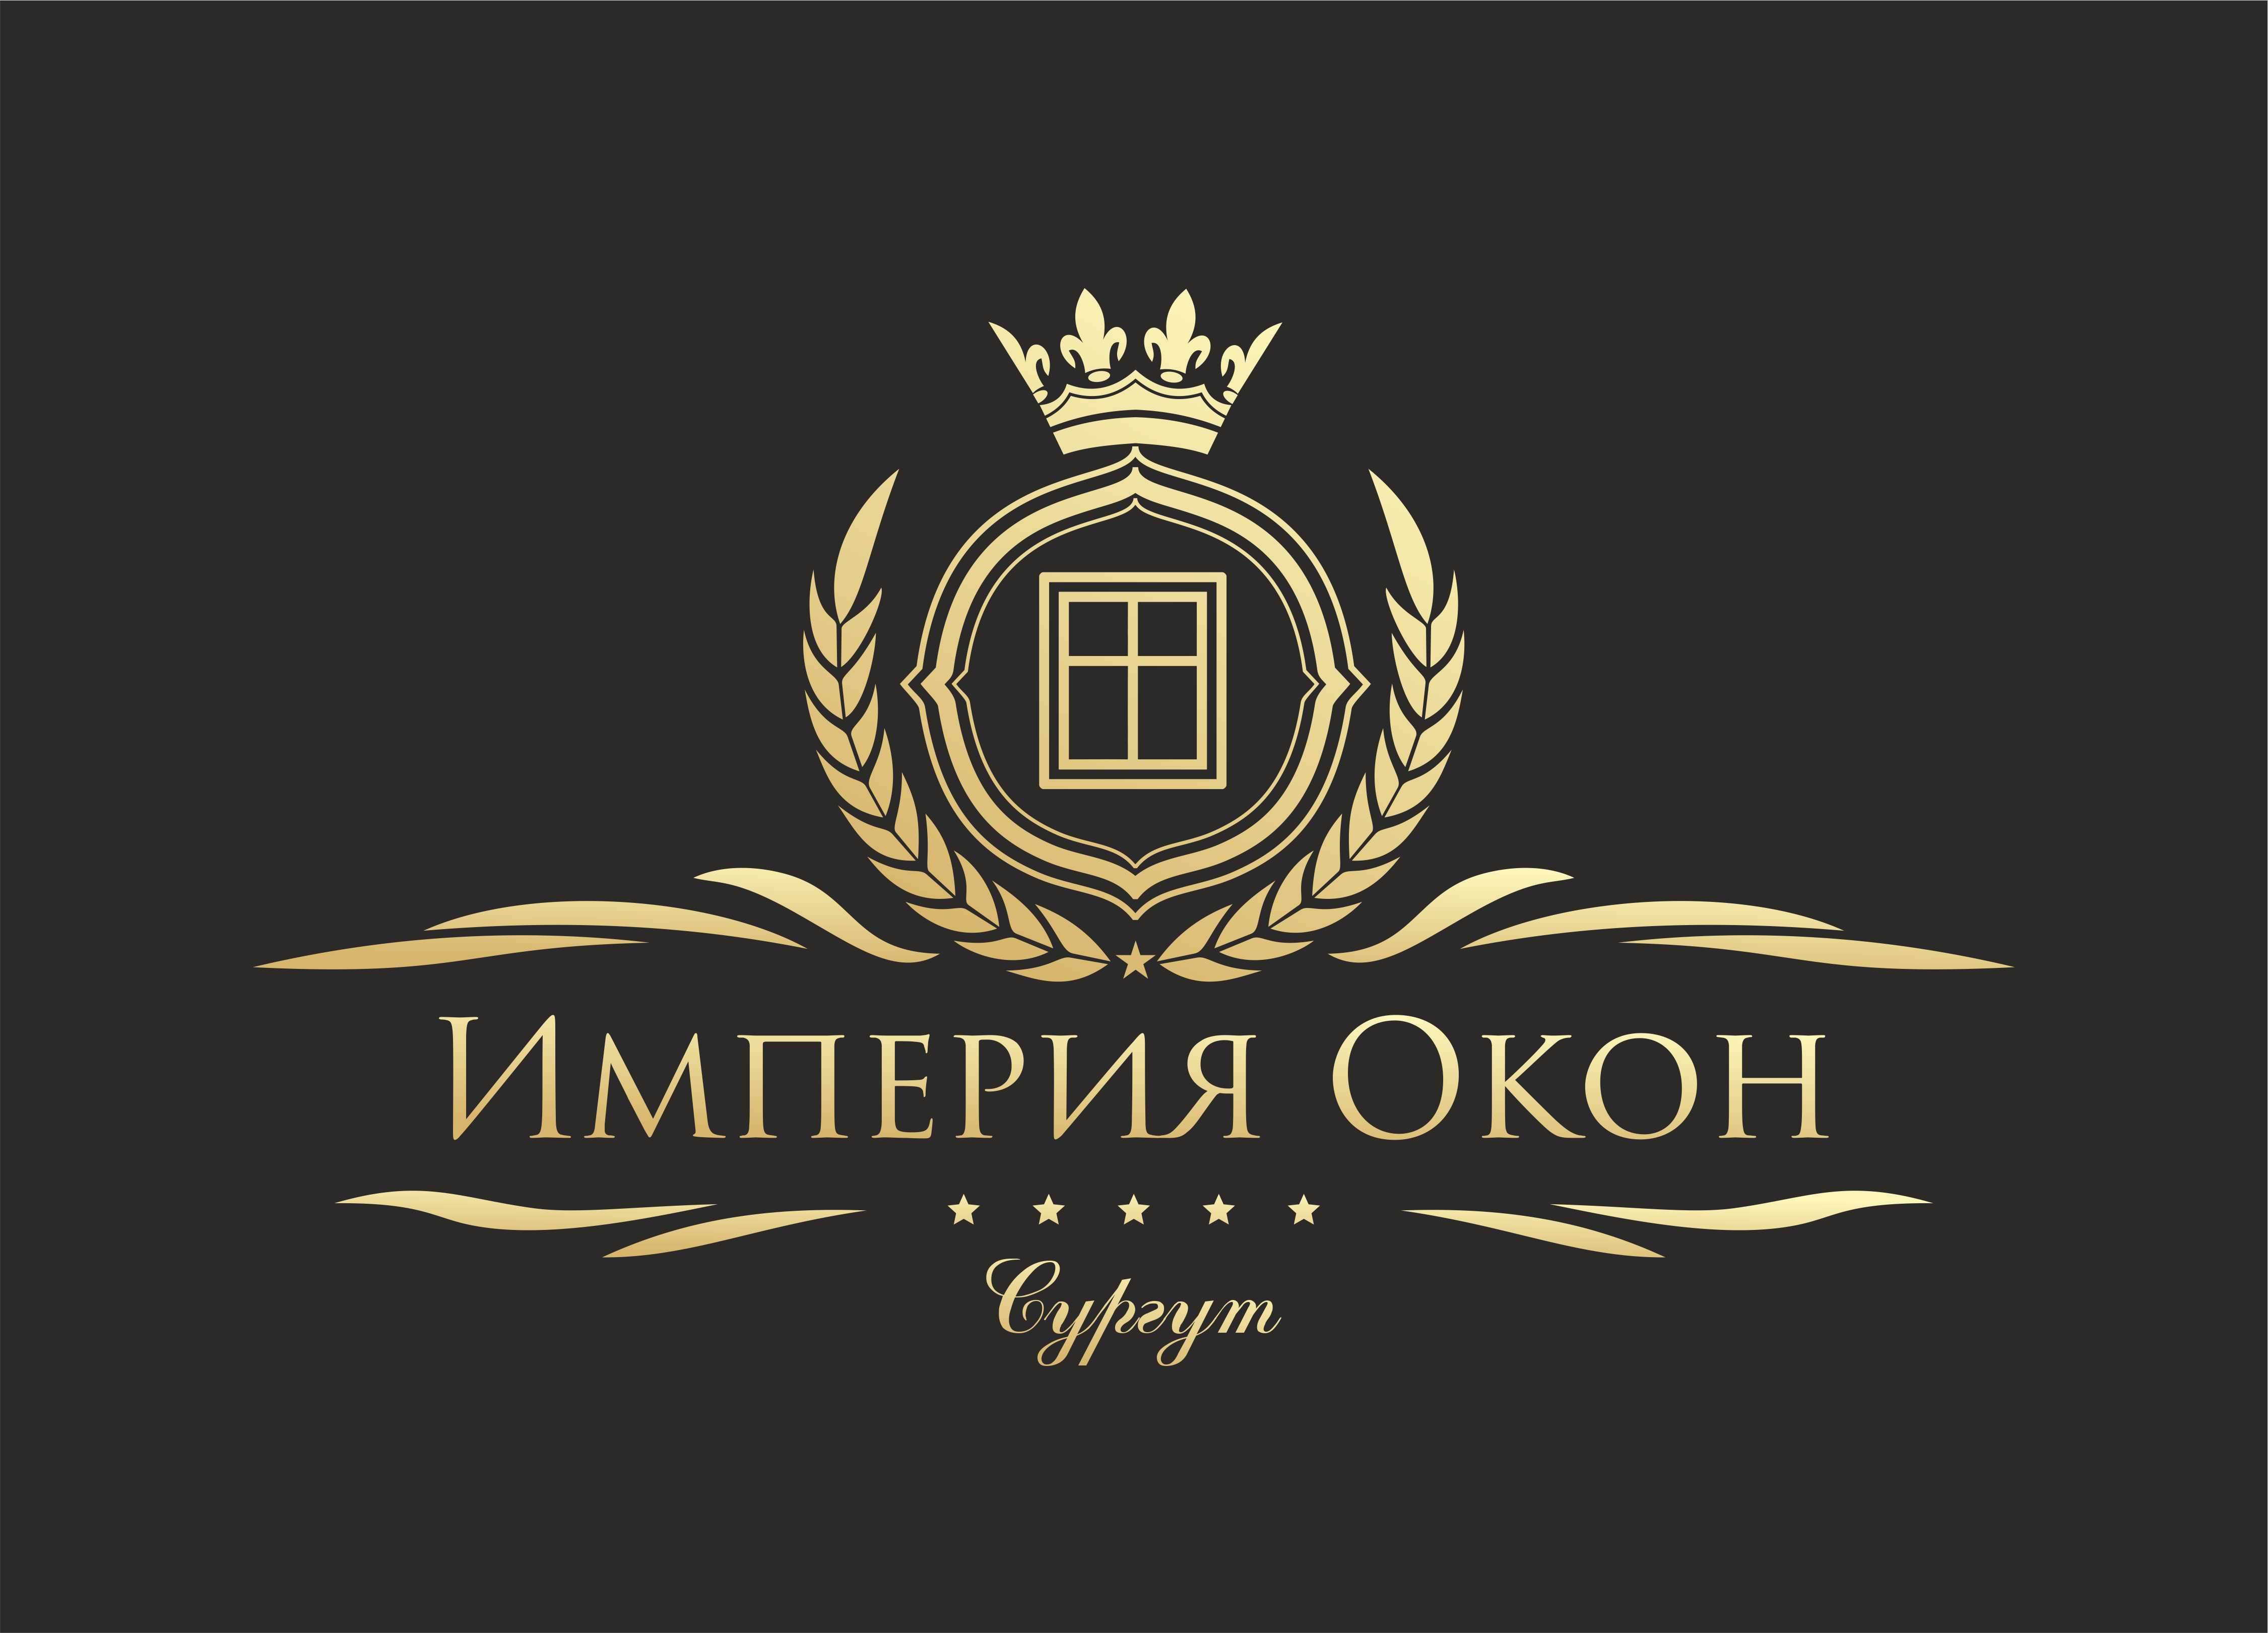 Империя Окон, производственный цех в Сургуте на Инженерная, 25 - отзывы, ад...